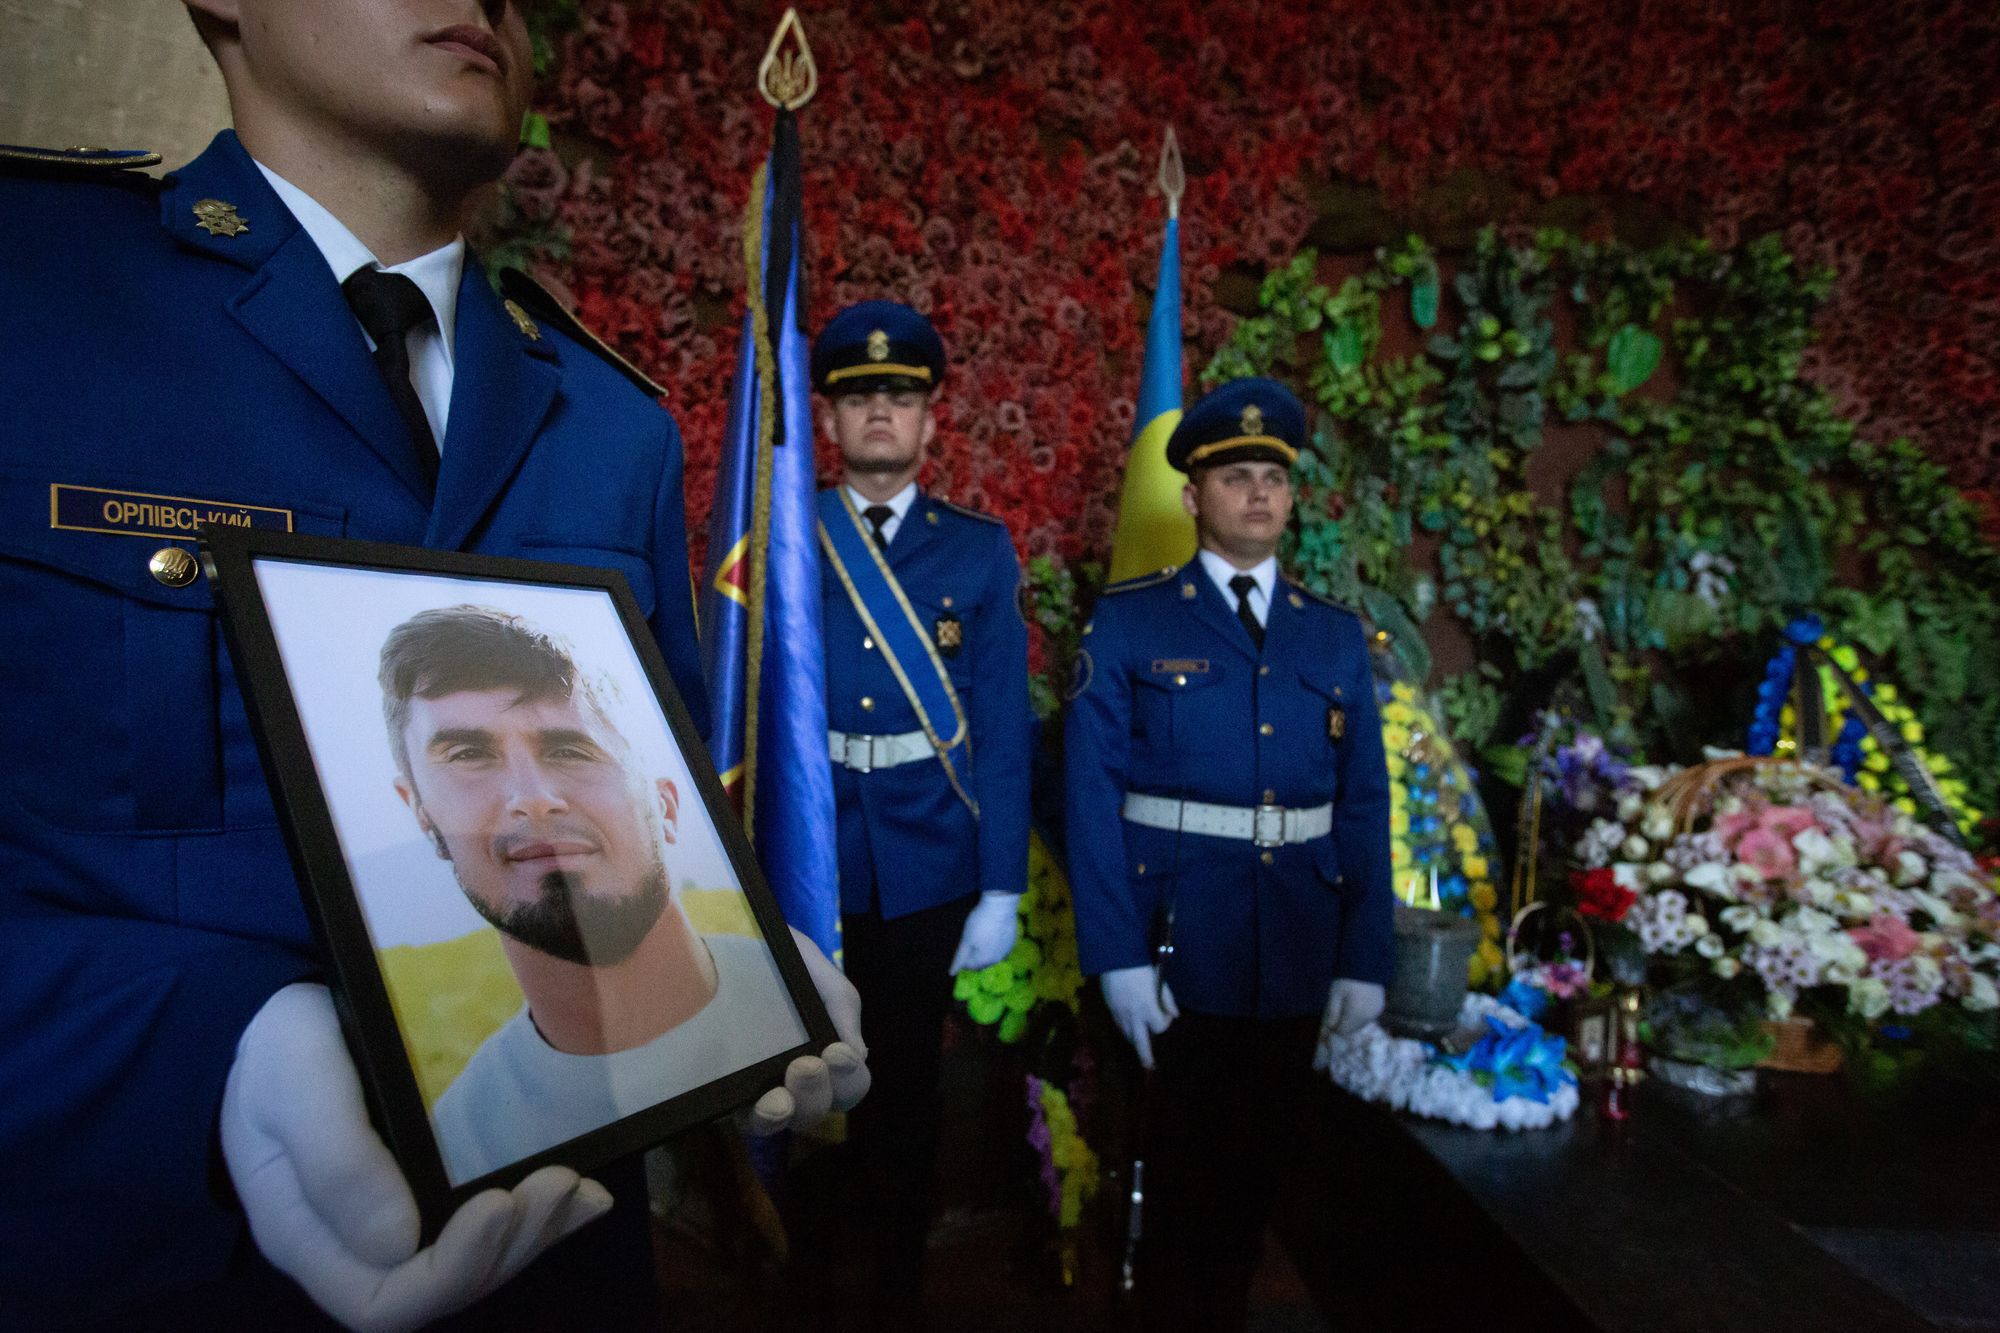 UN rejects Russia's claims on Olenivka prison massacre